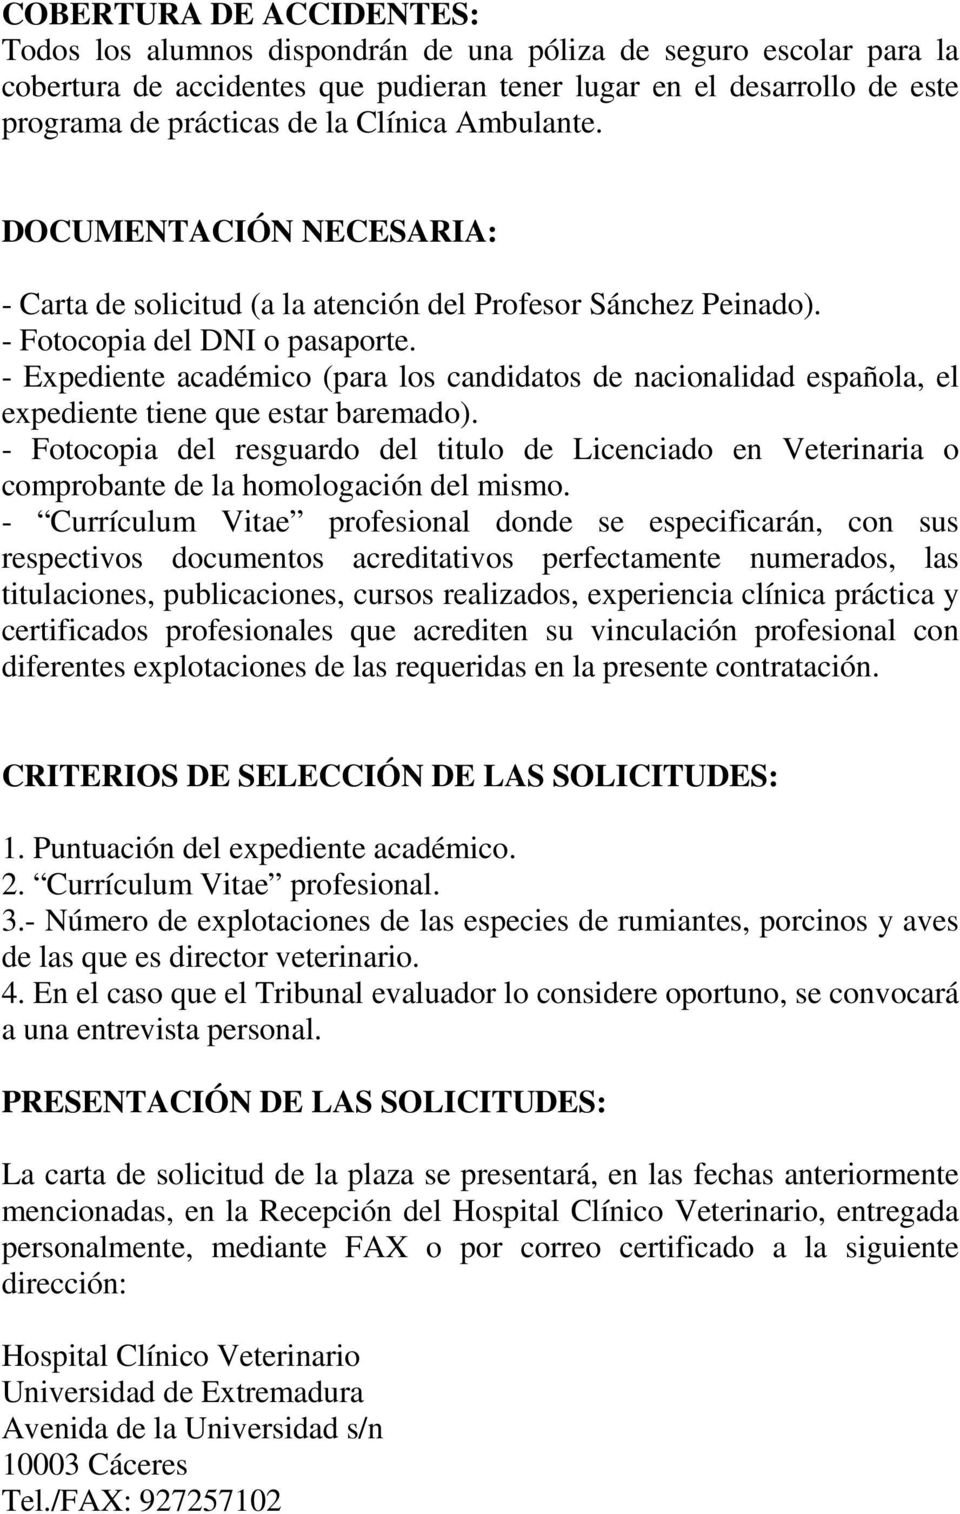 - Expediente académico (para los candidatos de nacionalidad española, el expediente tiene que estar baremado).